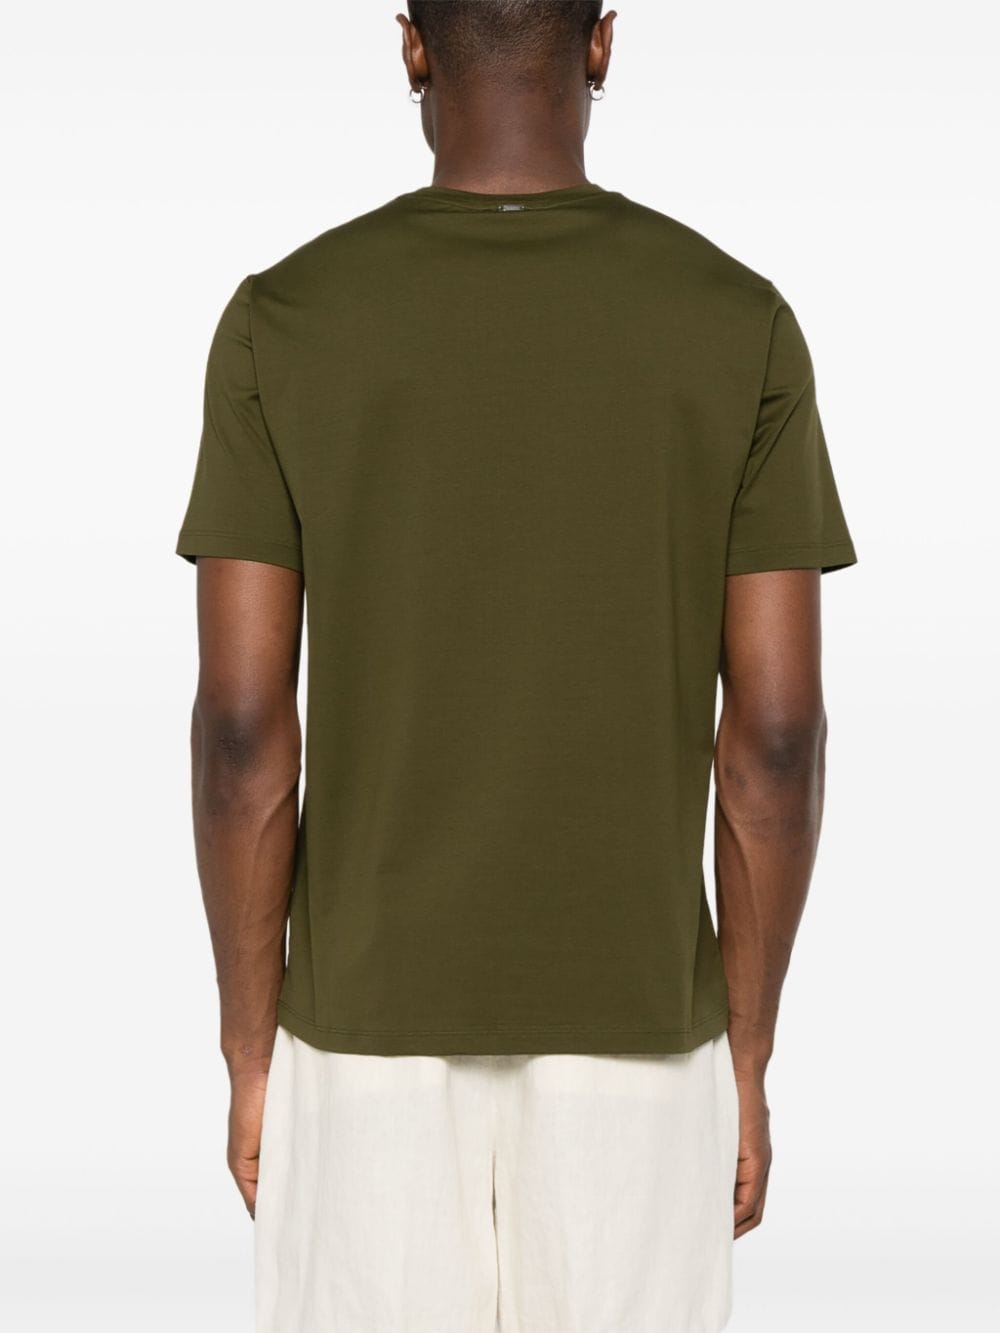 Herno T-shirt met ronde hals Groen